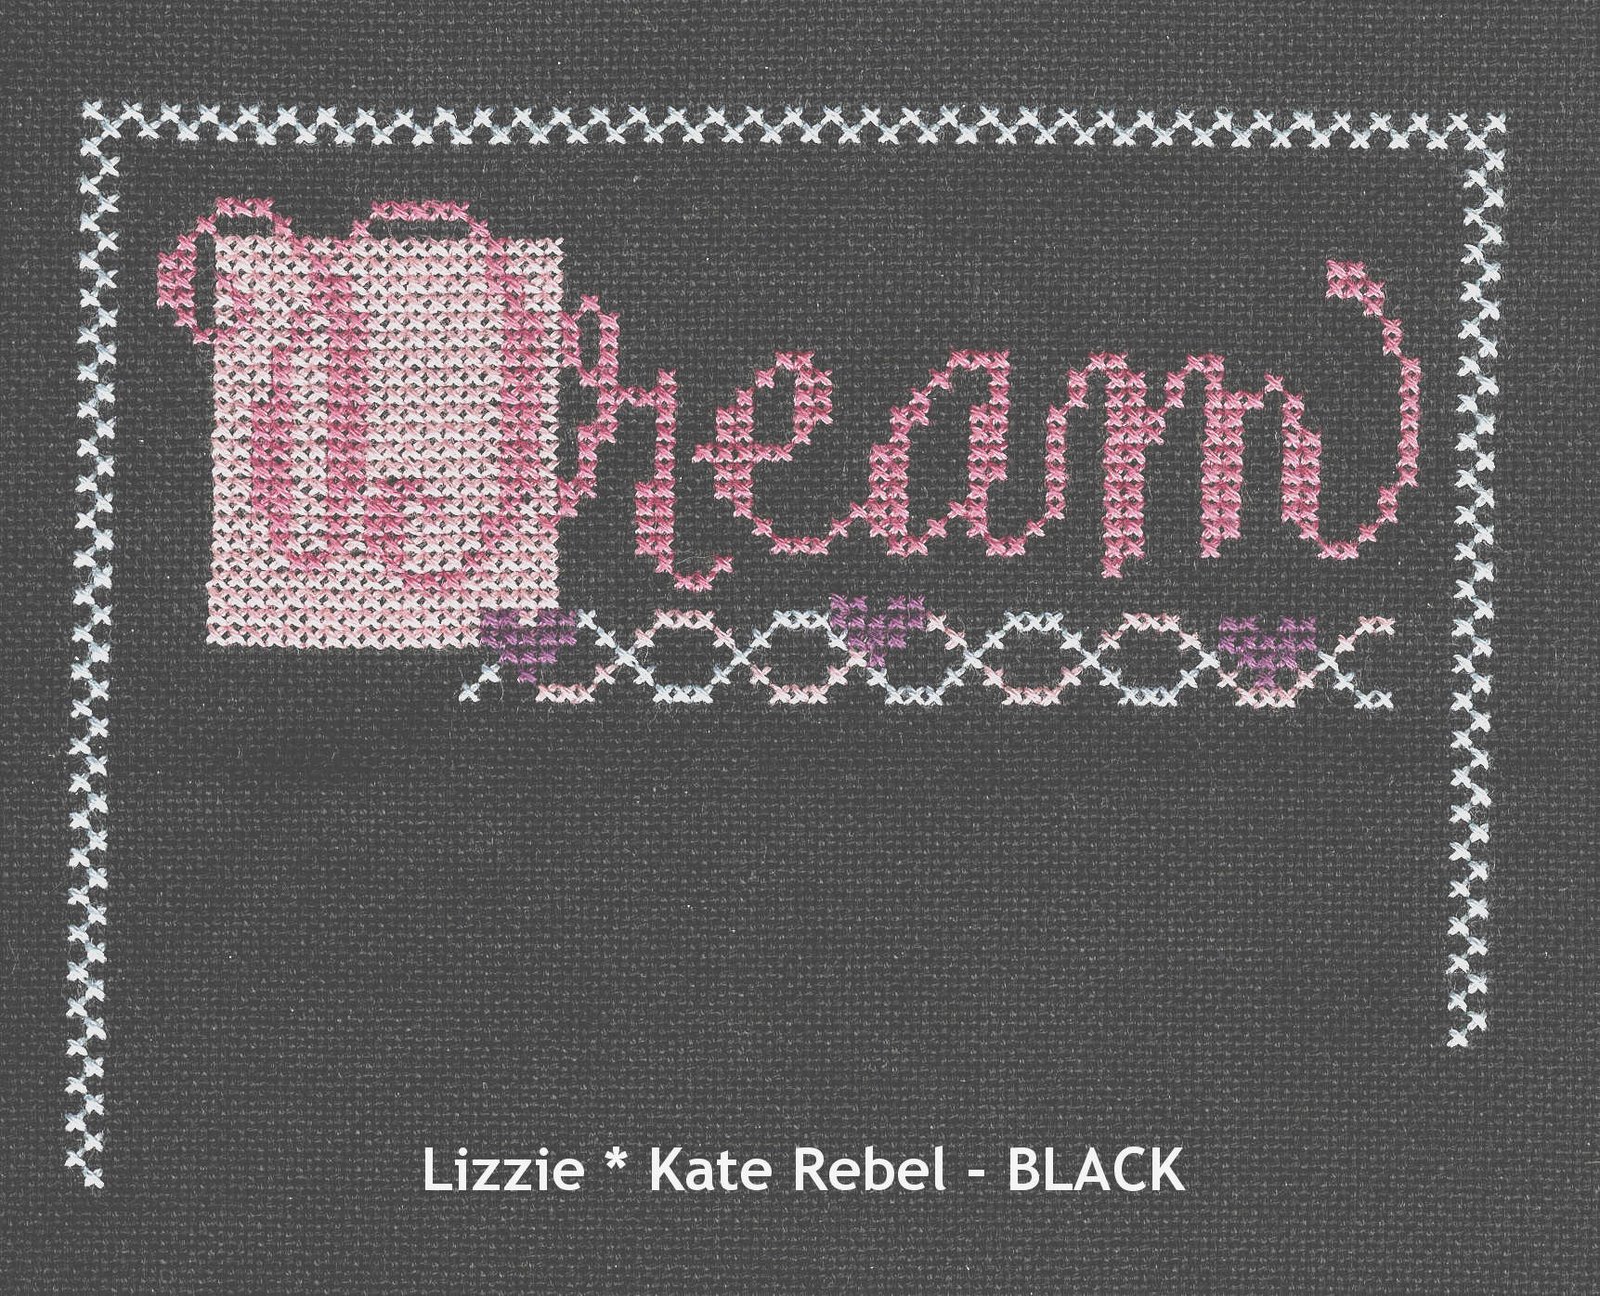 [Lizzie+Kate+Black++24Feb08.jpg]